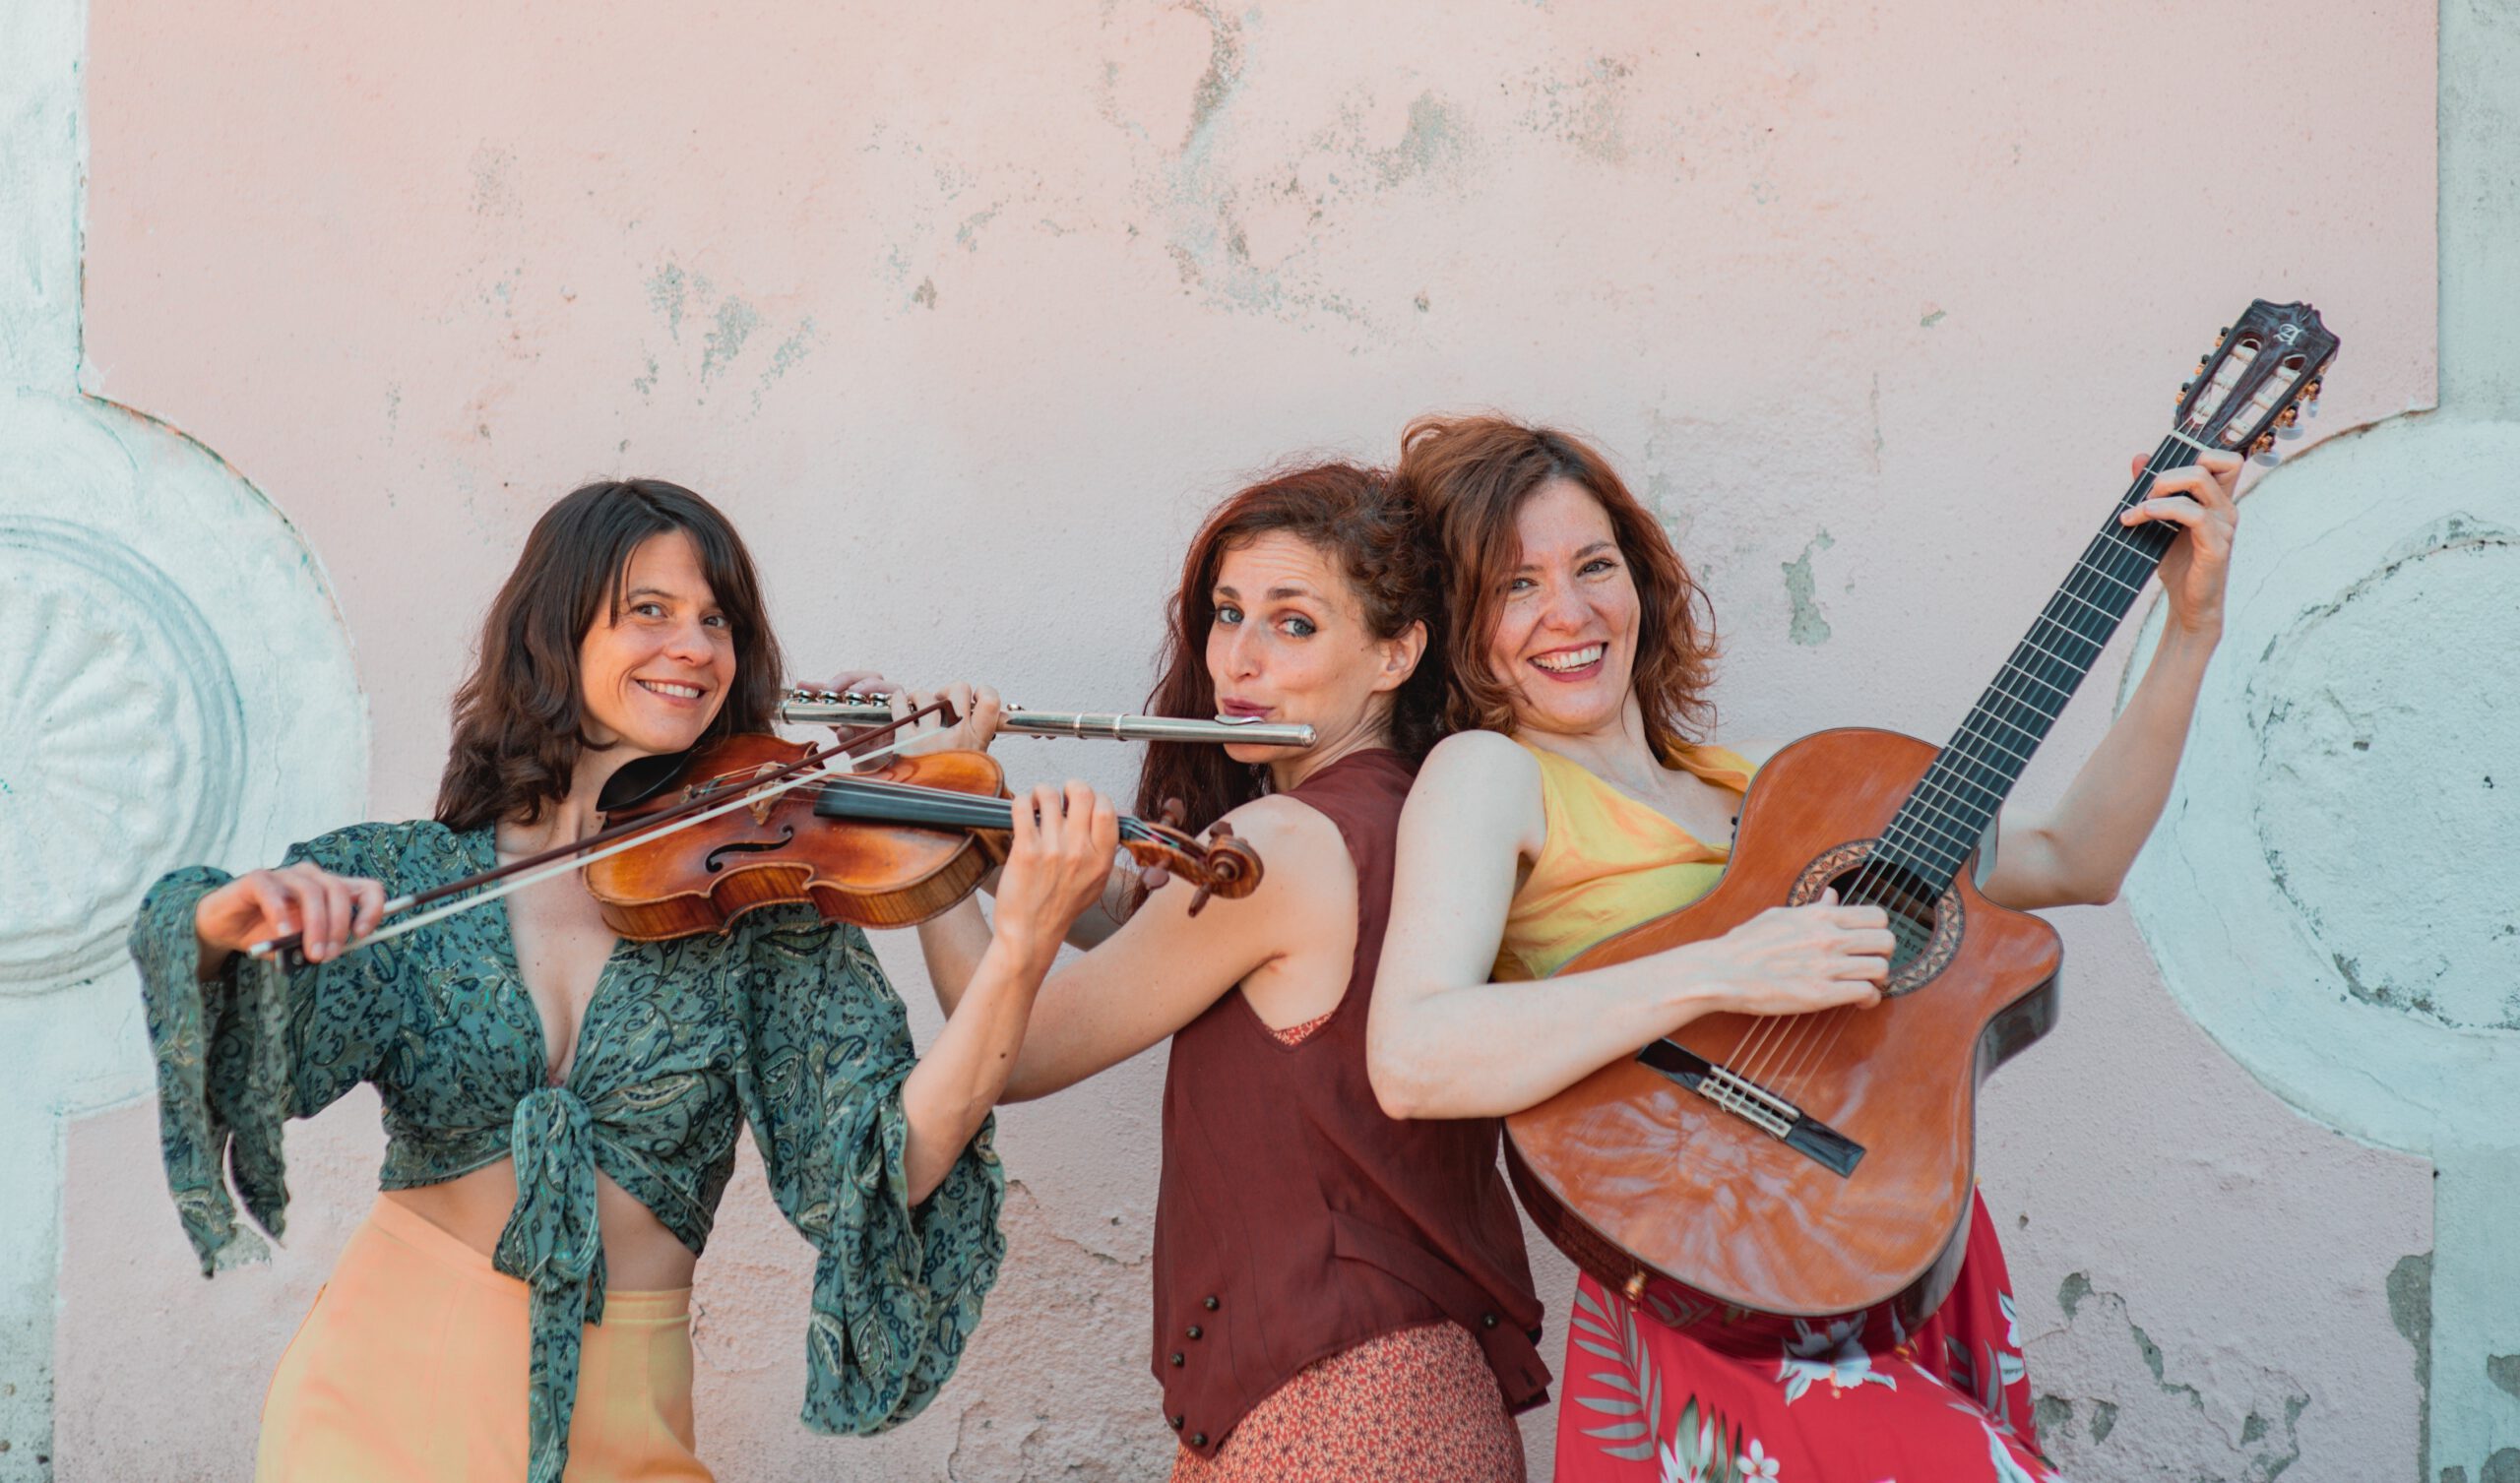 Torhauskonzert mit dem Trio FAYA aus Lissabon